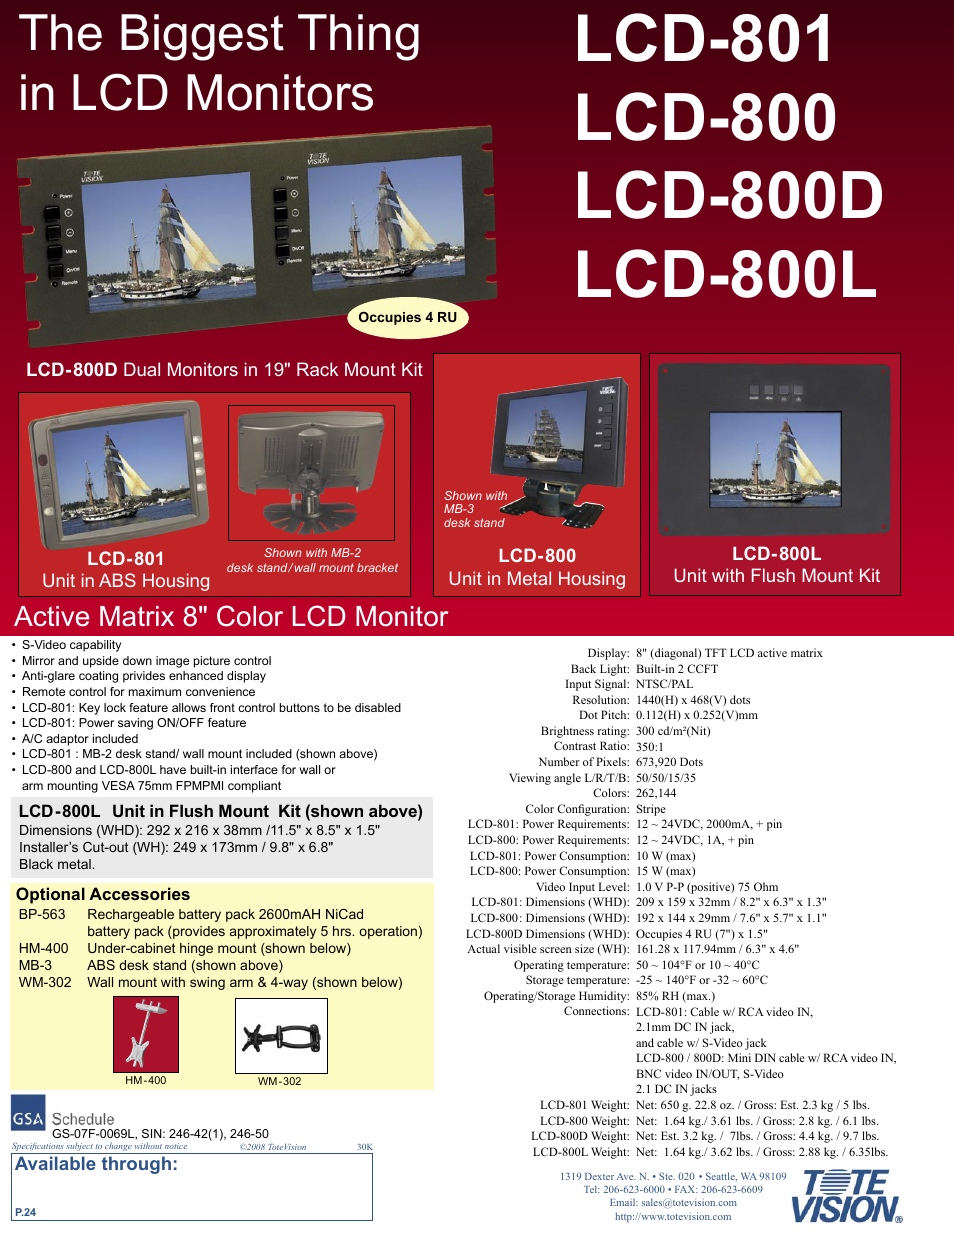 LCD-800D